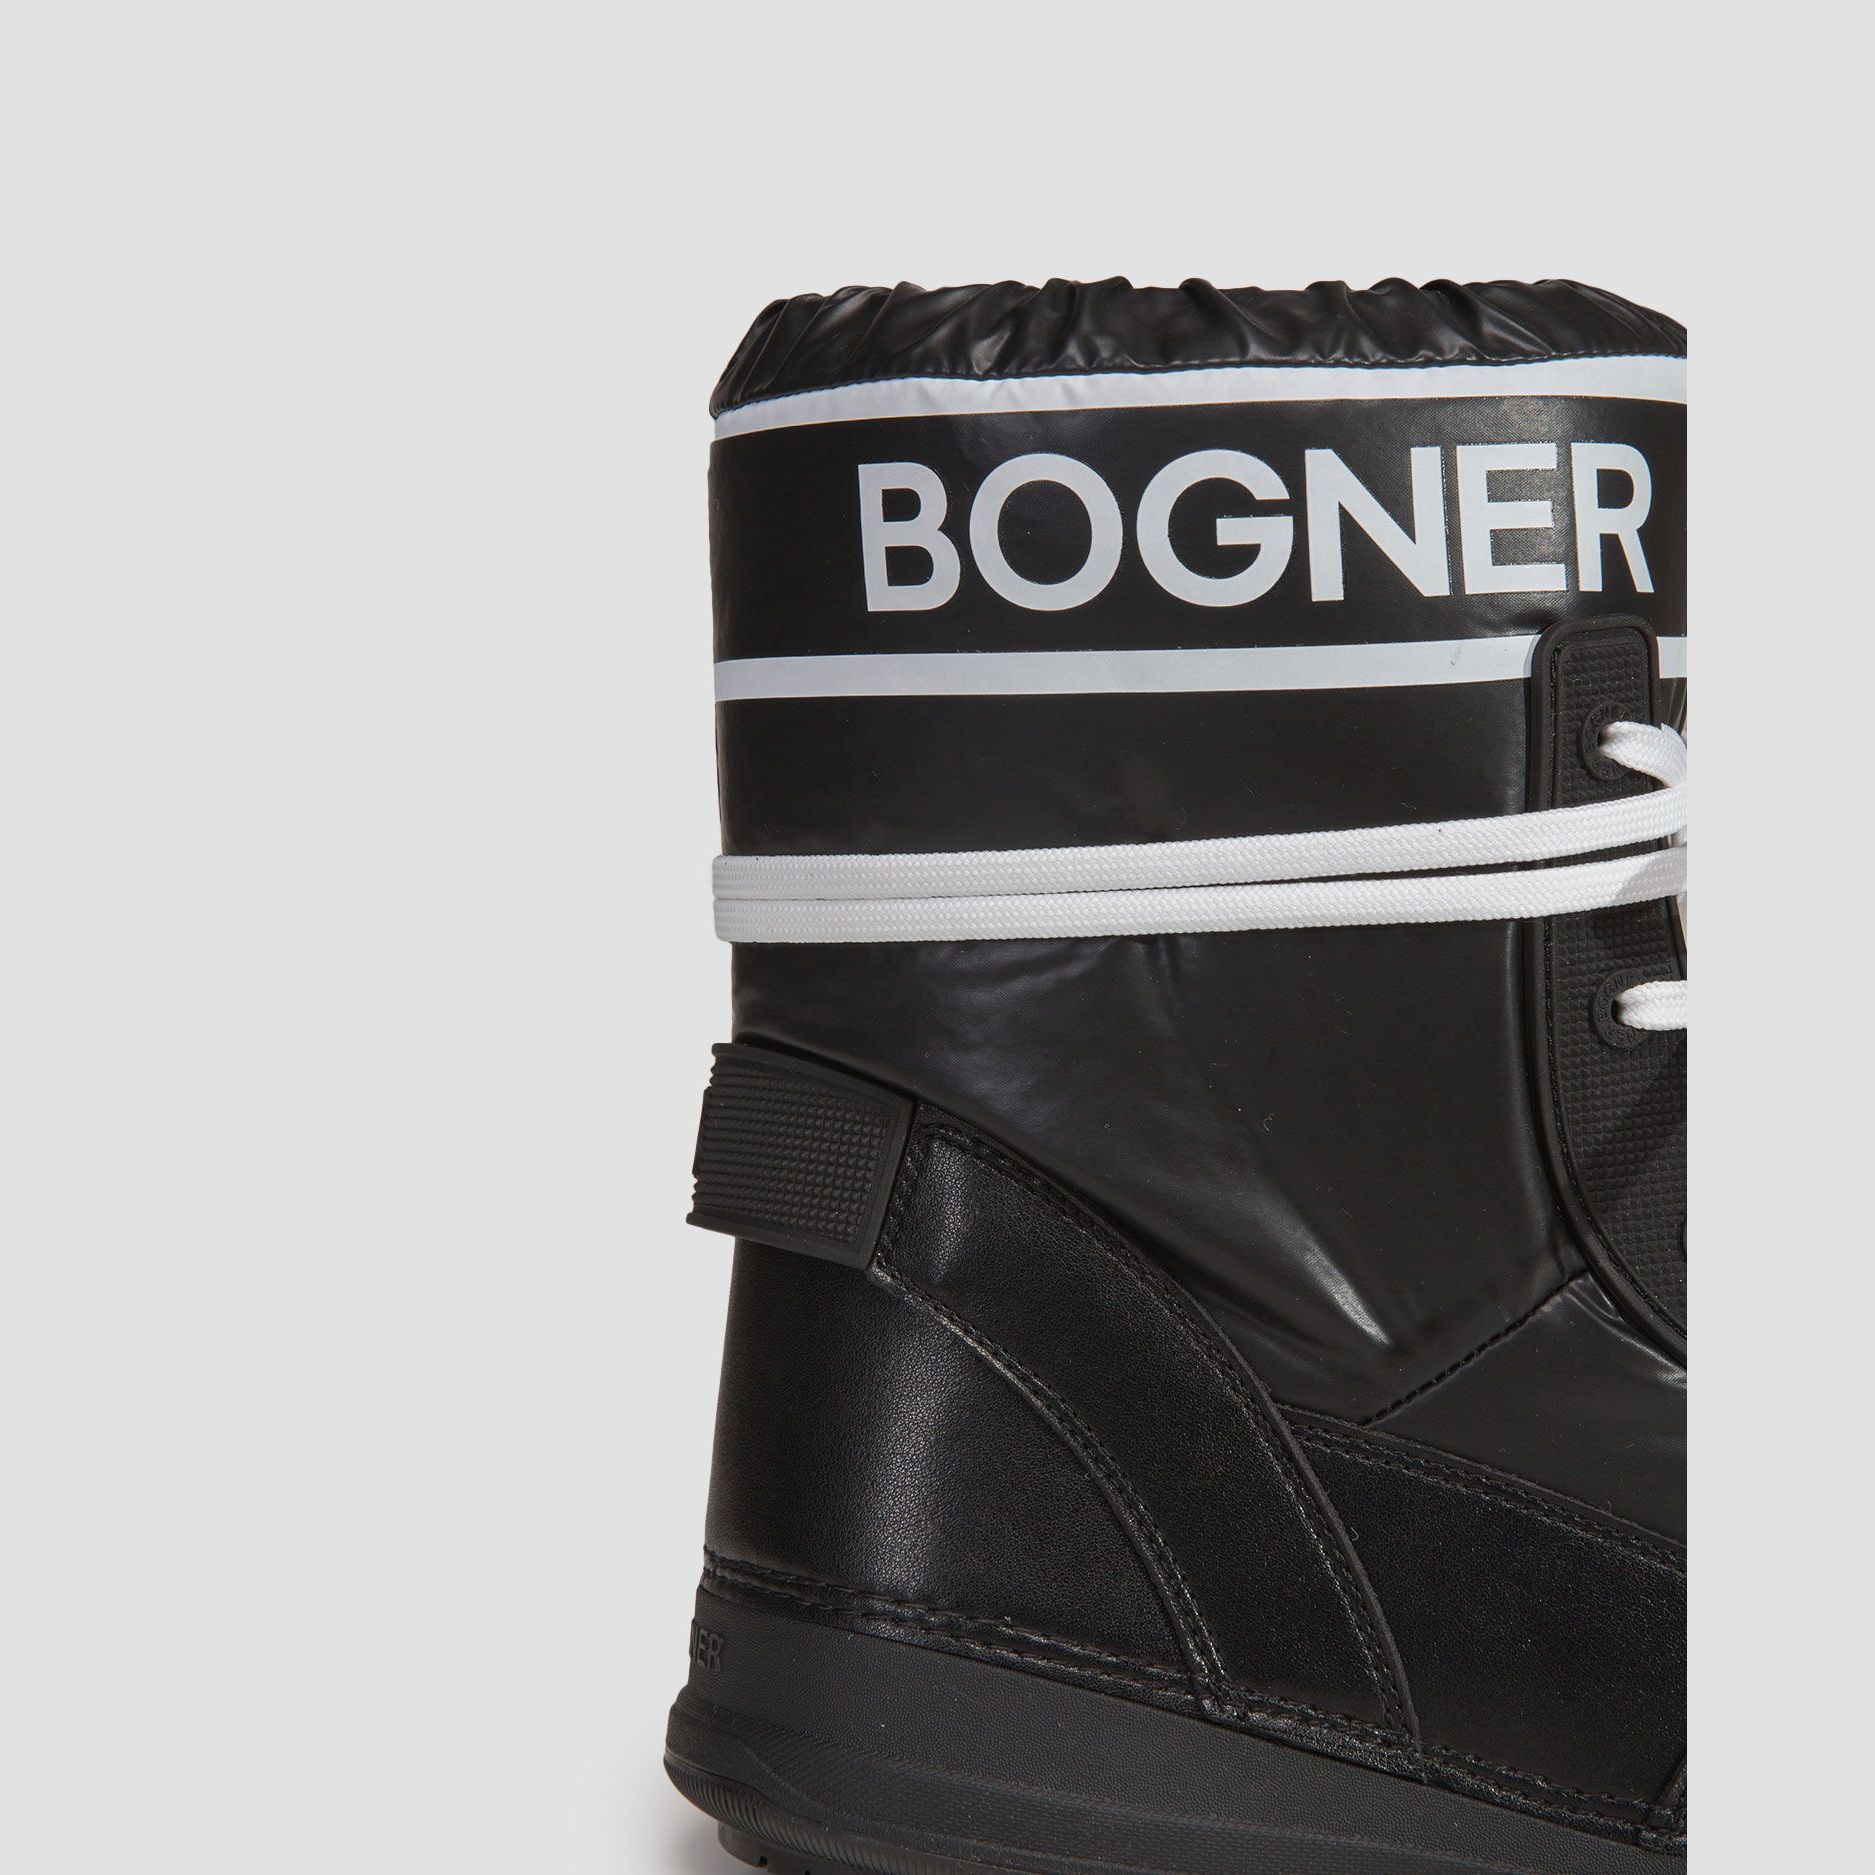 Winter Shoes -  bogner La Plagne 1B Snow boots